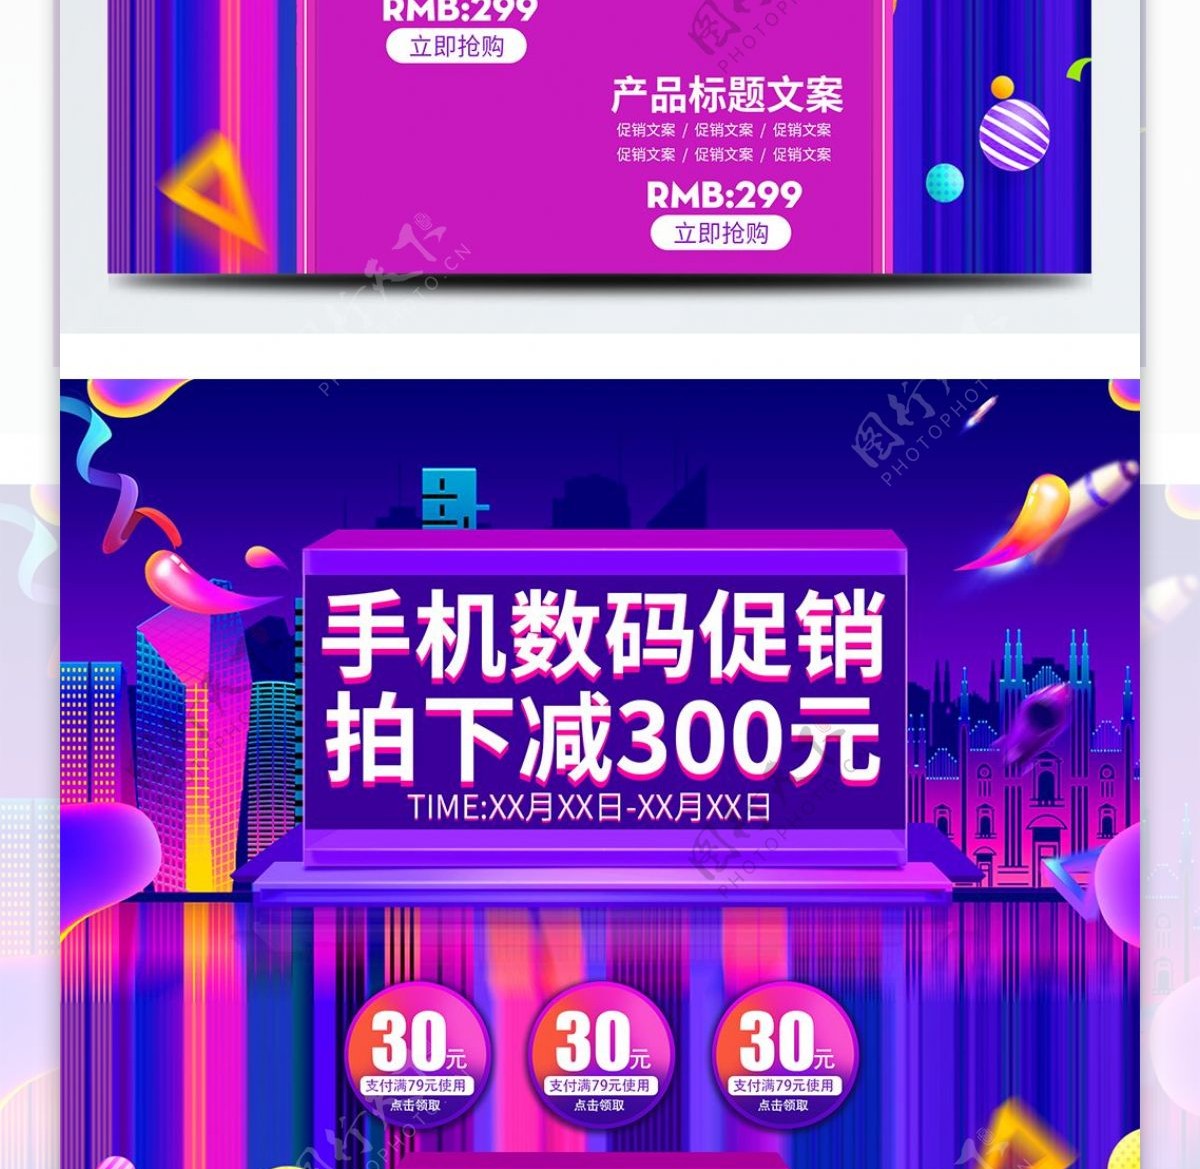 紫色炫酷欧普风手机数码首页促销电商模板